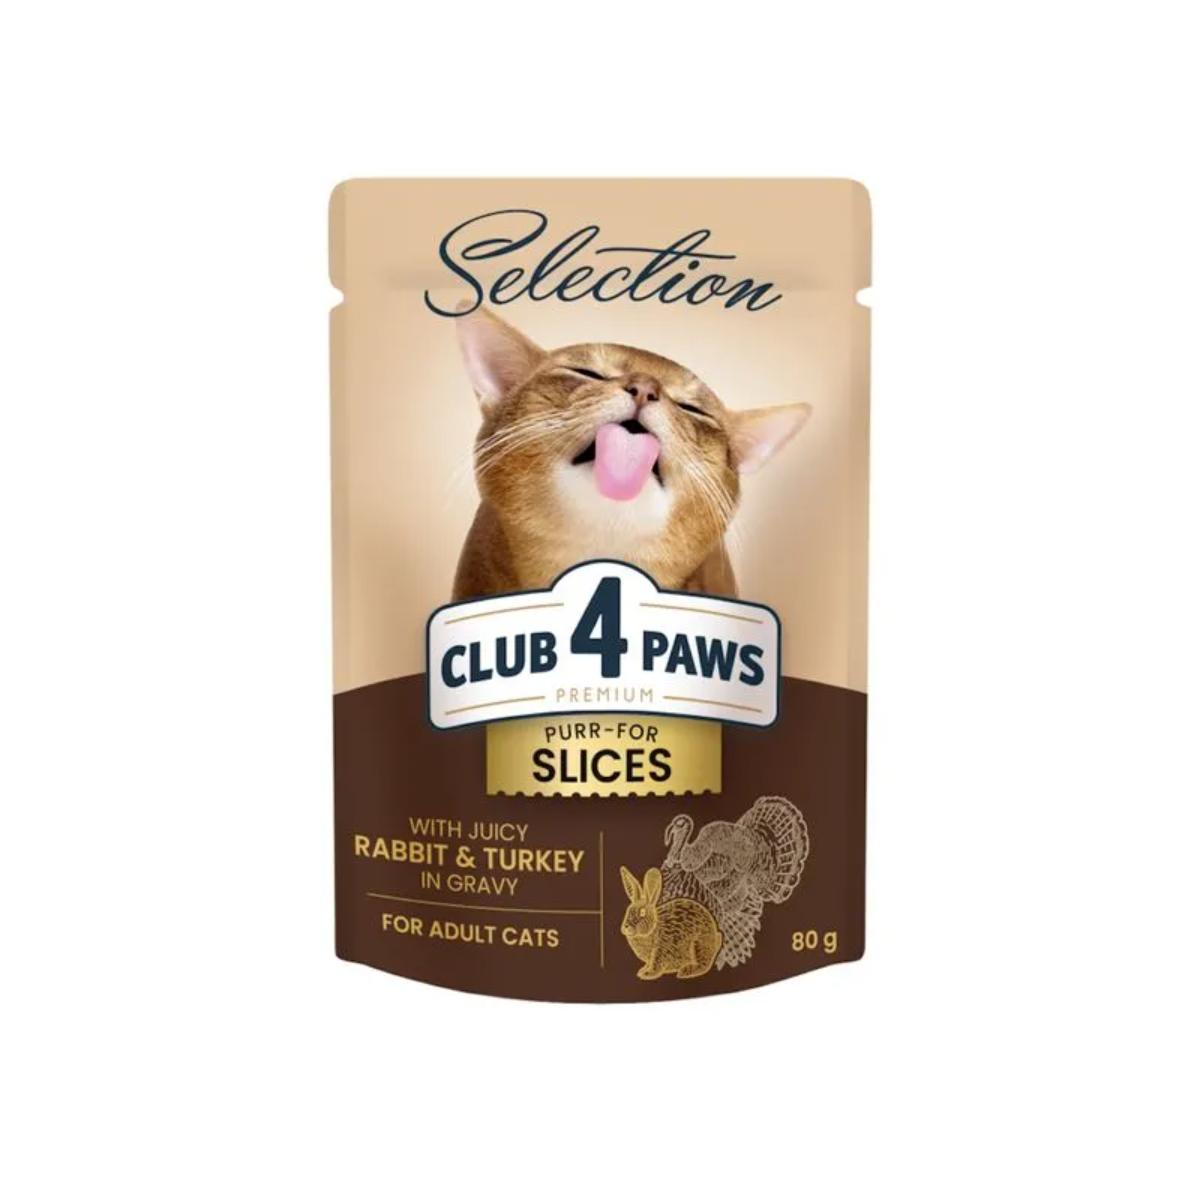 CLUB 4 PAWS Premium Plus Selection, Iepure și Curcan, plic hrană umedă pisici, (în sos), 80g x 12buc